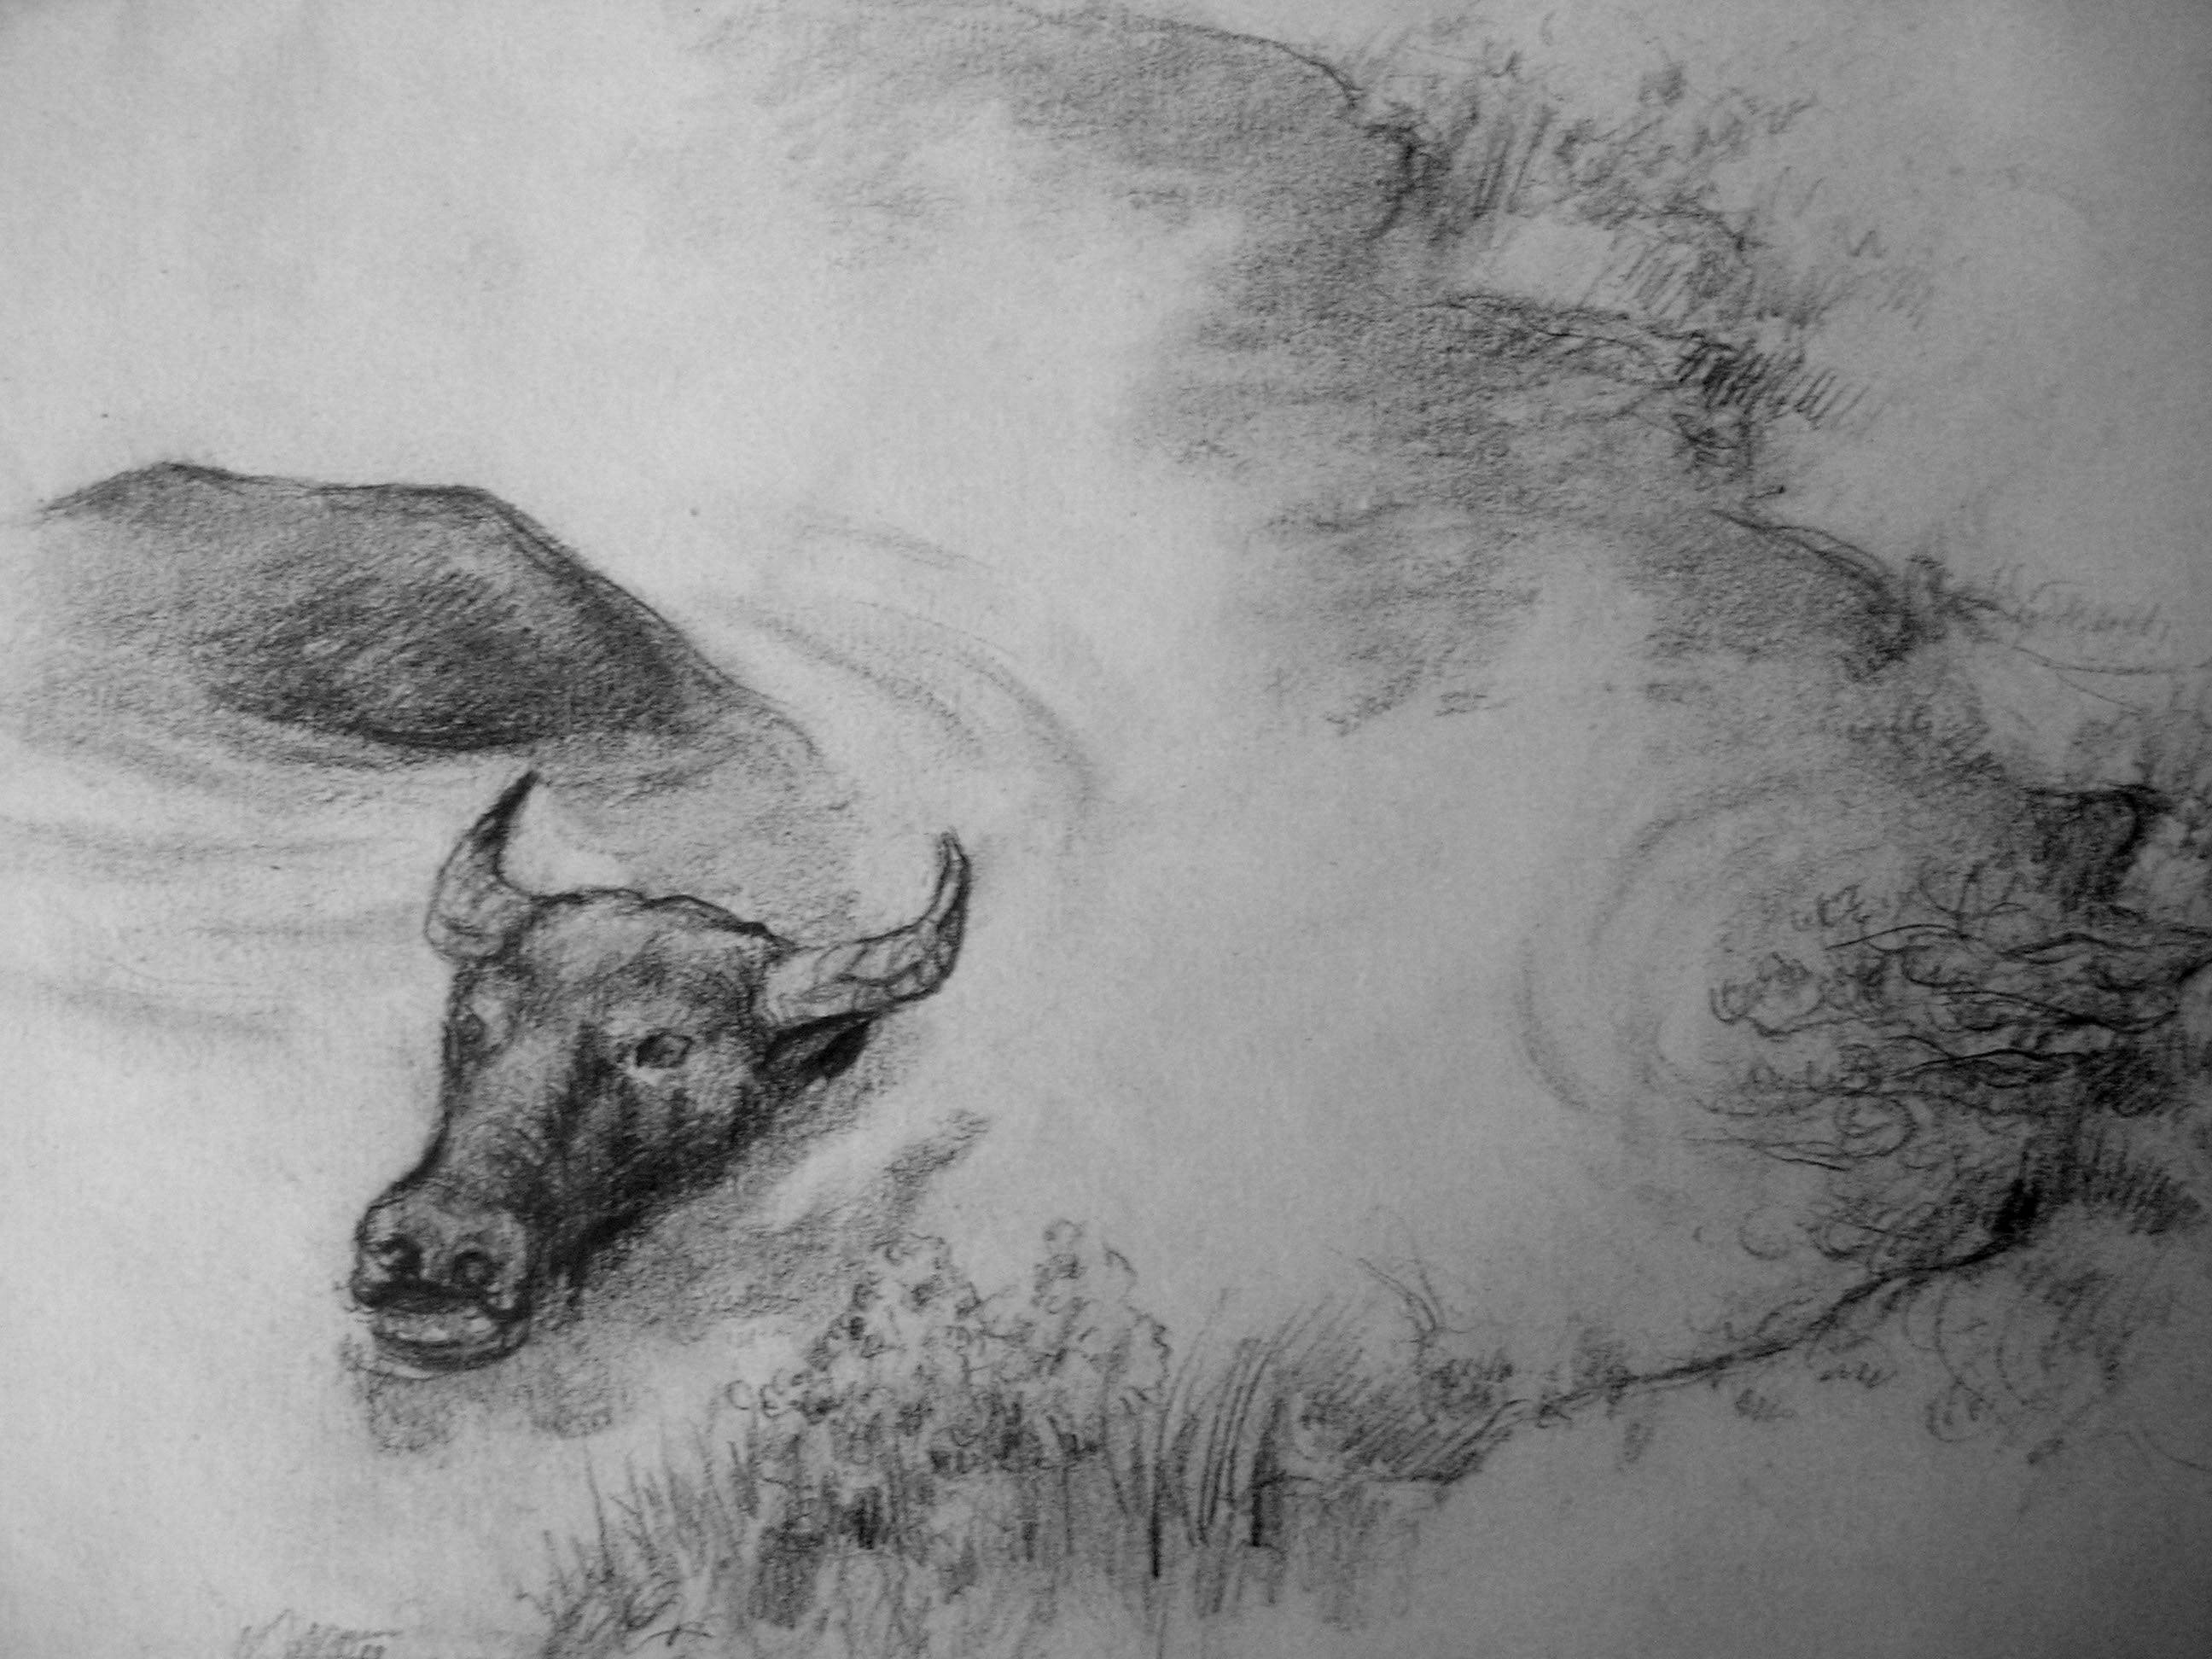 牛的素描画像铅笔画图片